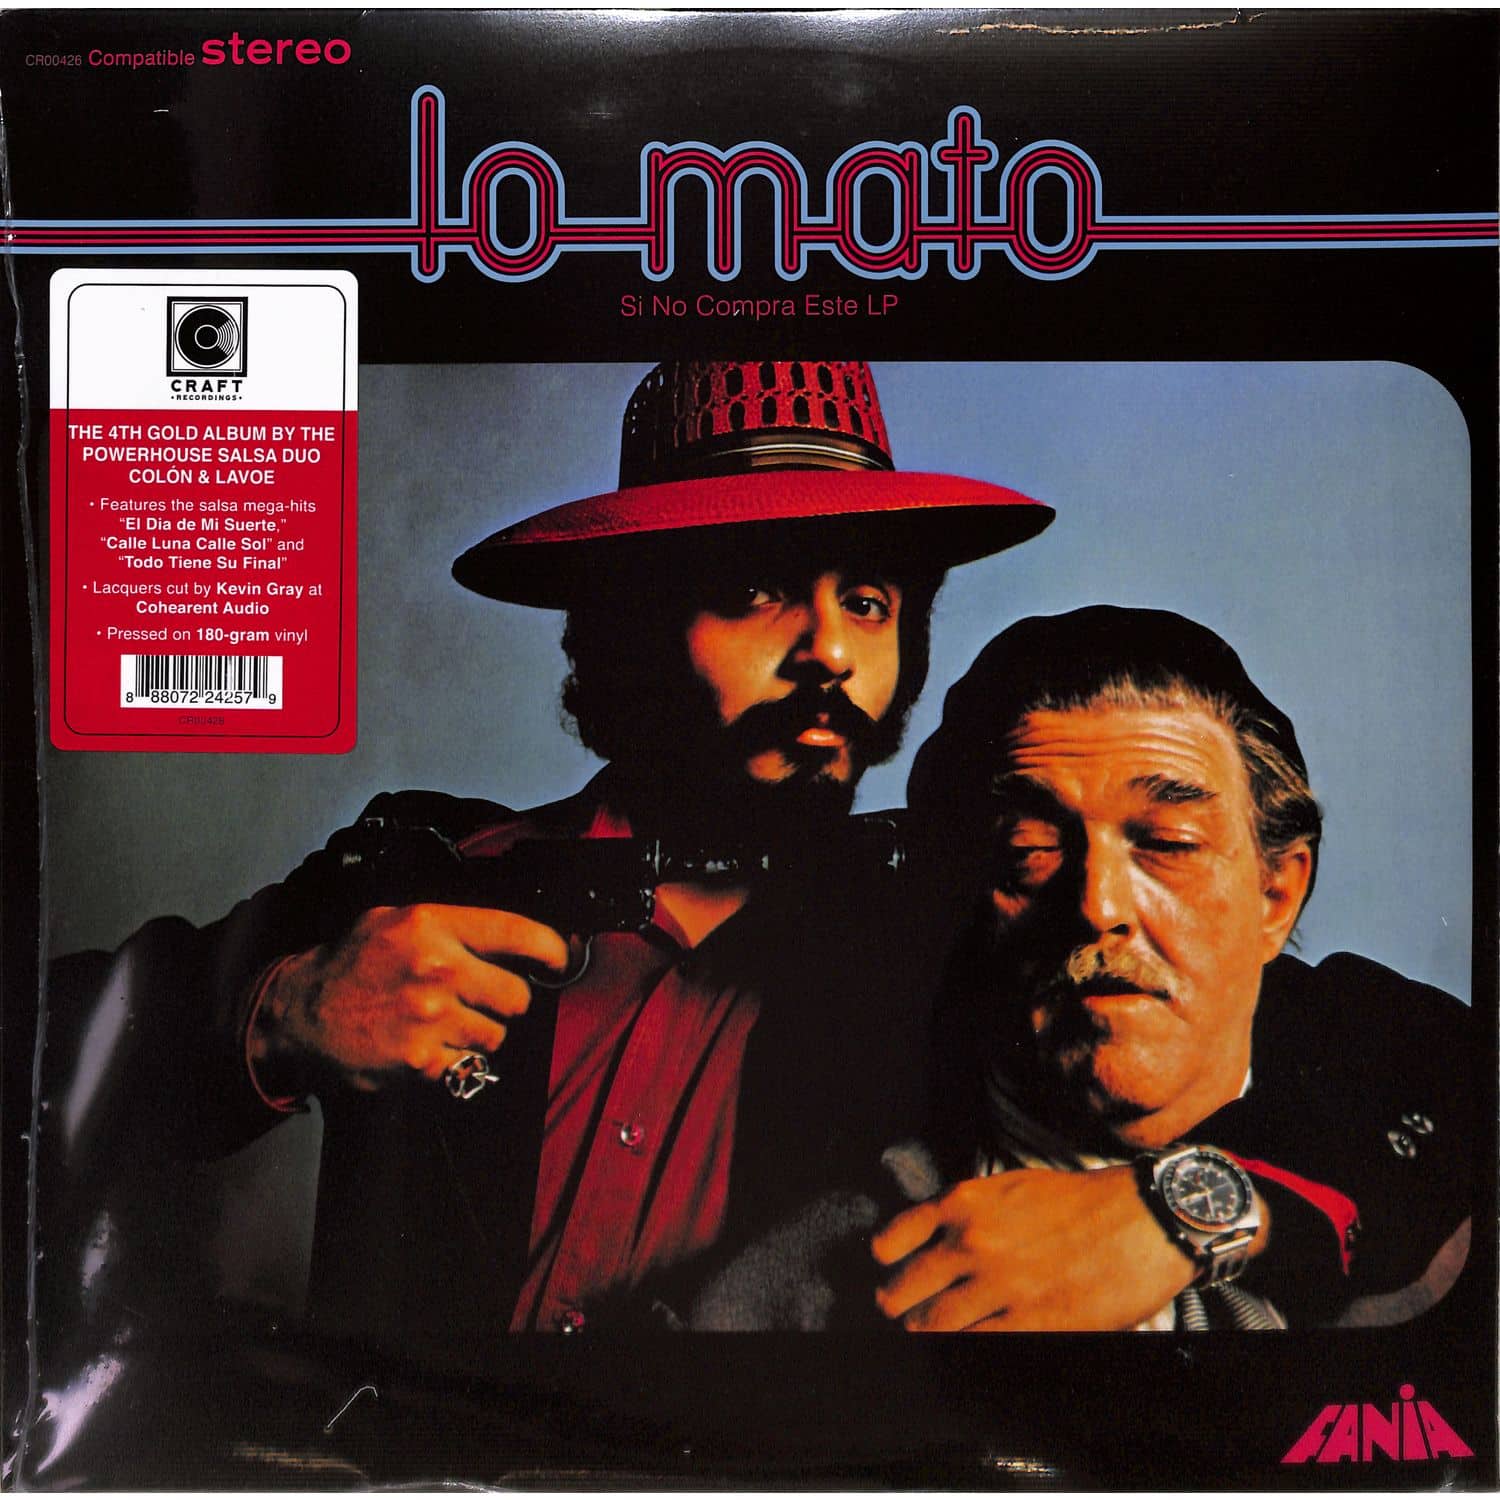 Willie Colon & Hector Lavoe - LO MATO 